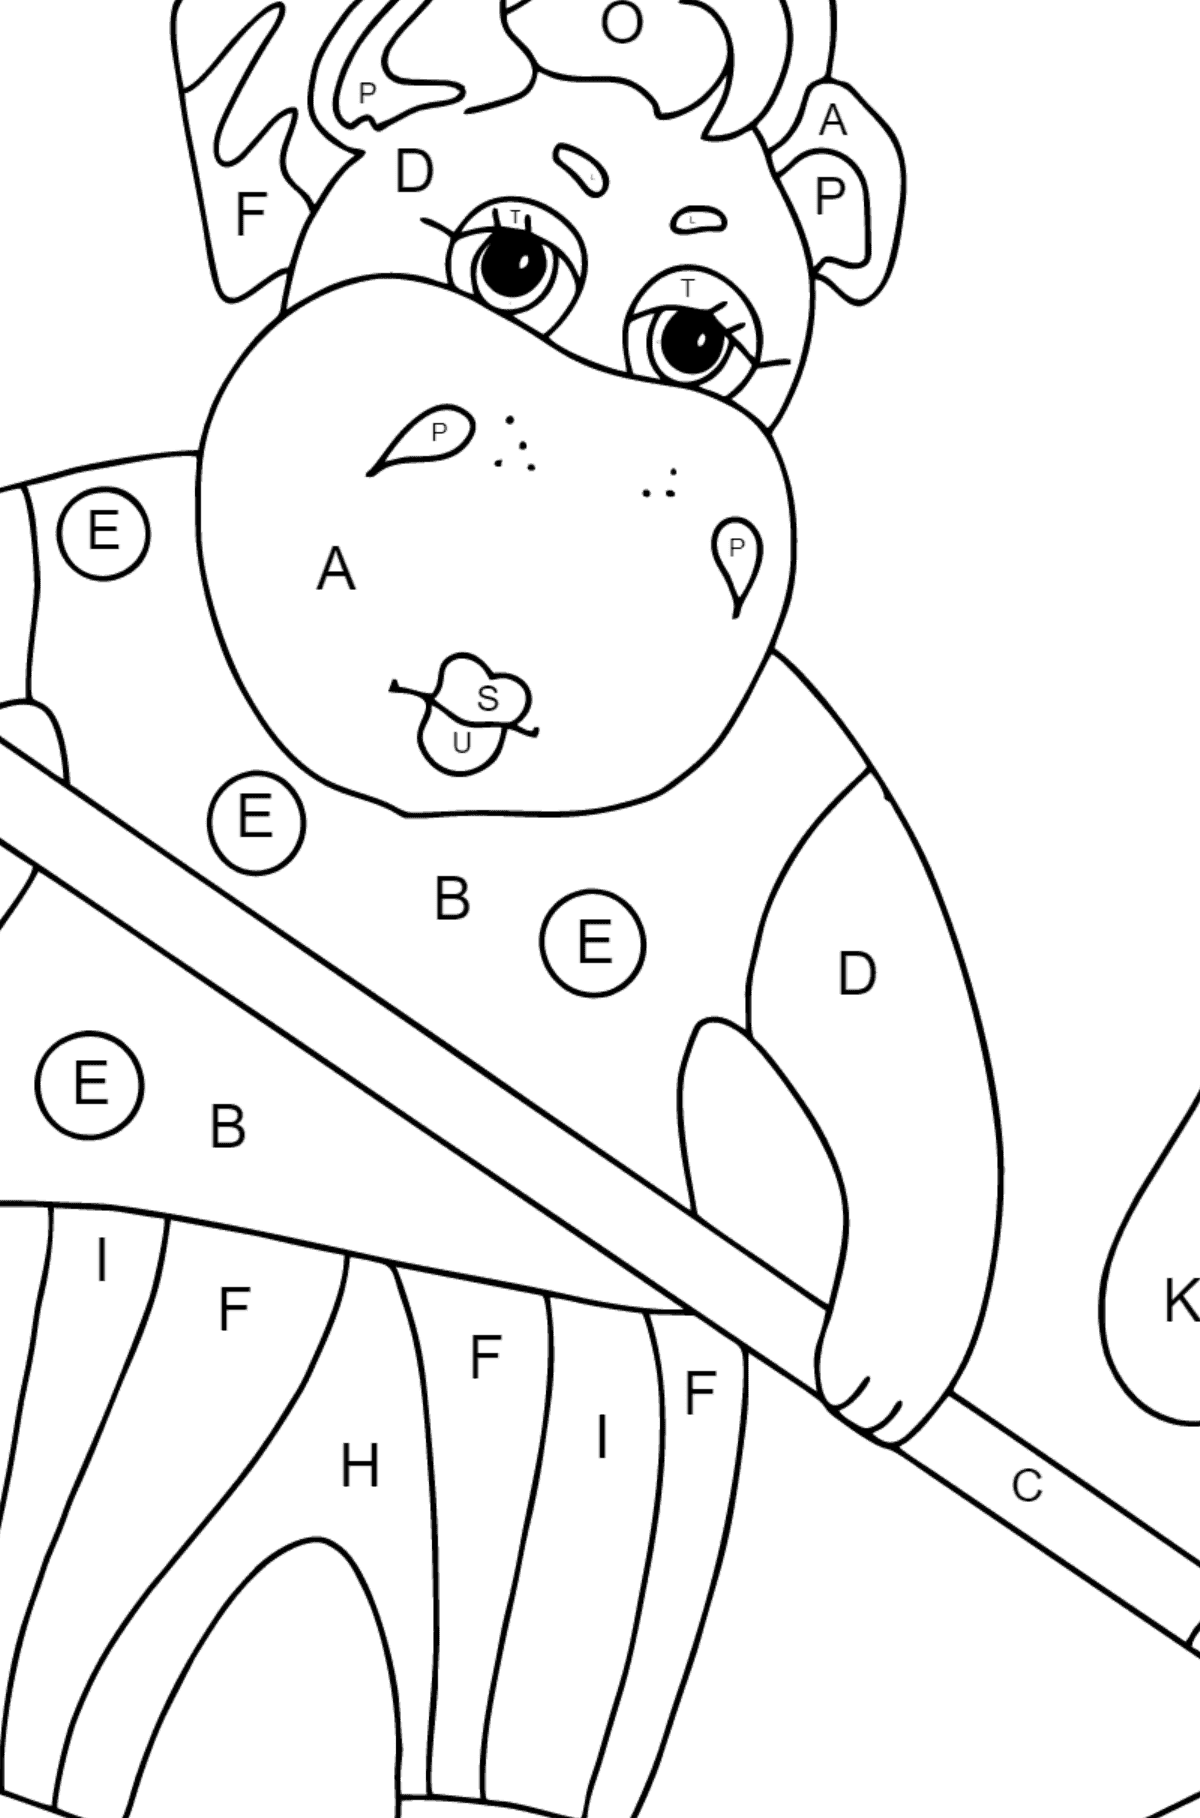 Coloriage hippopotame mignon - Coloriage par Lettres pour les Enfants